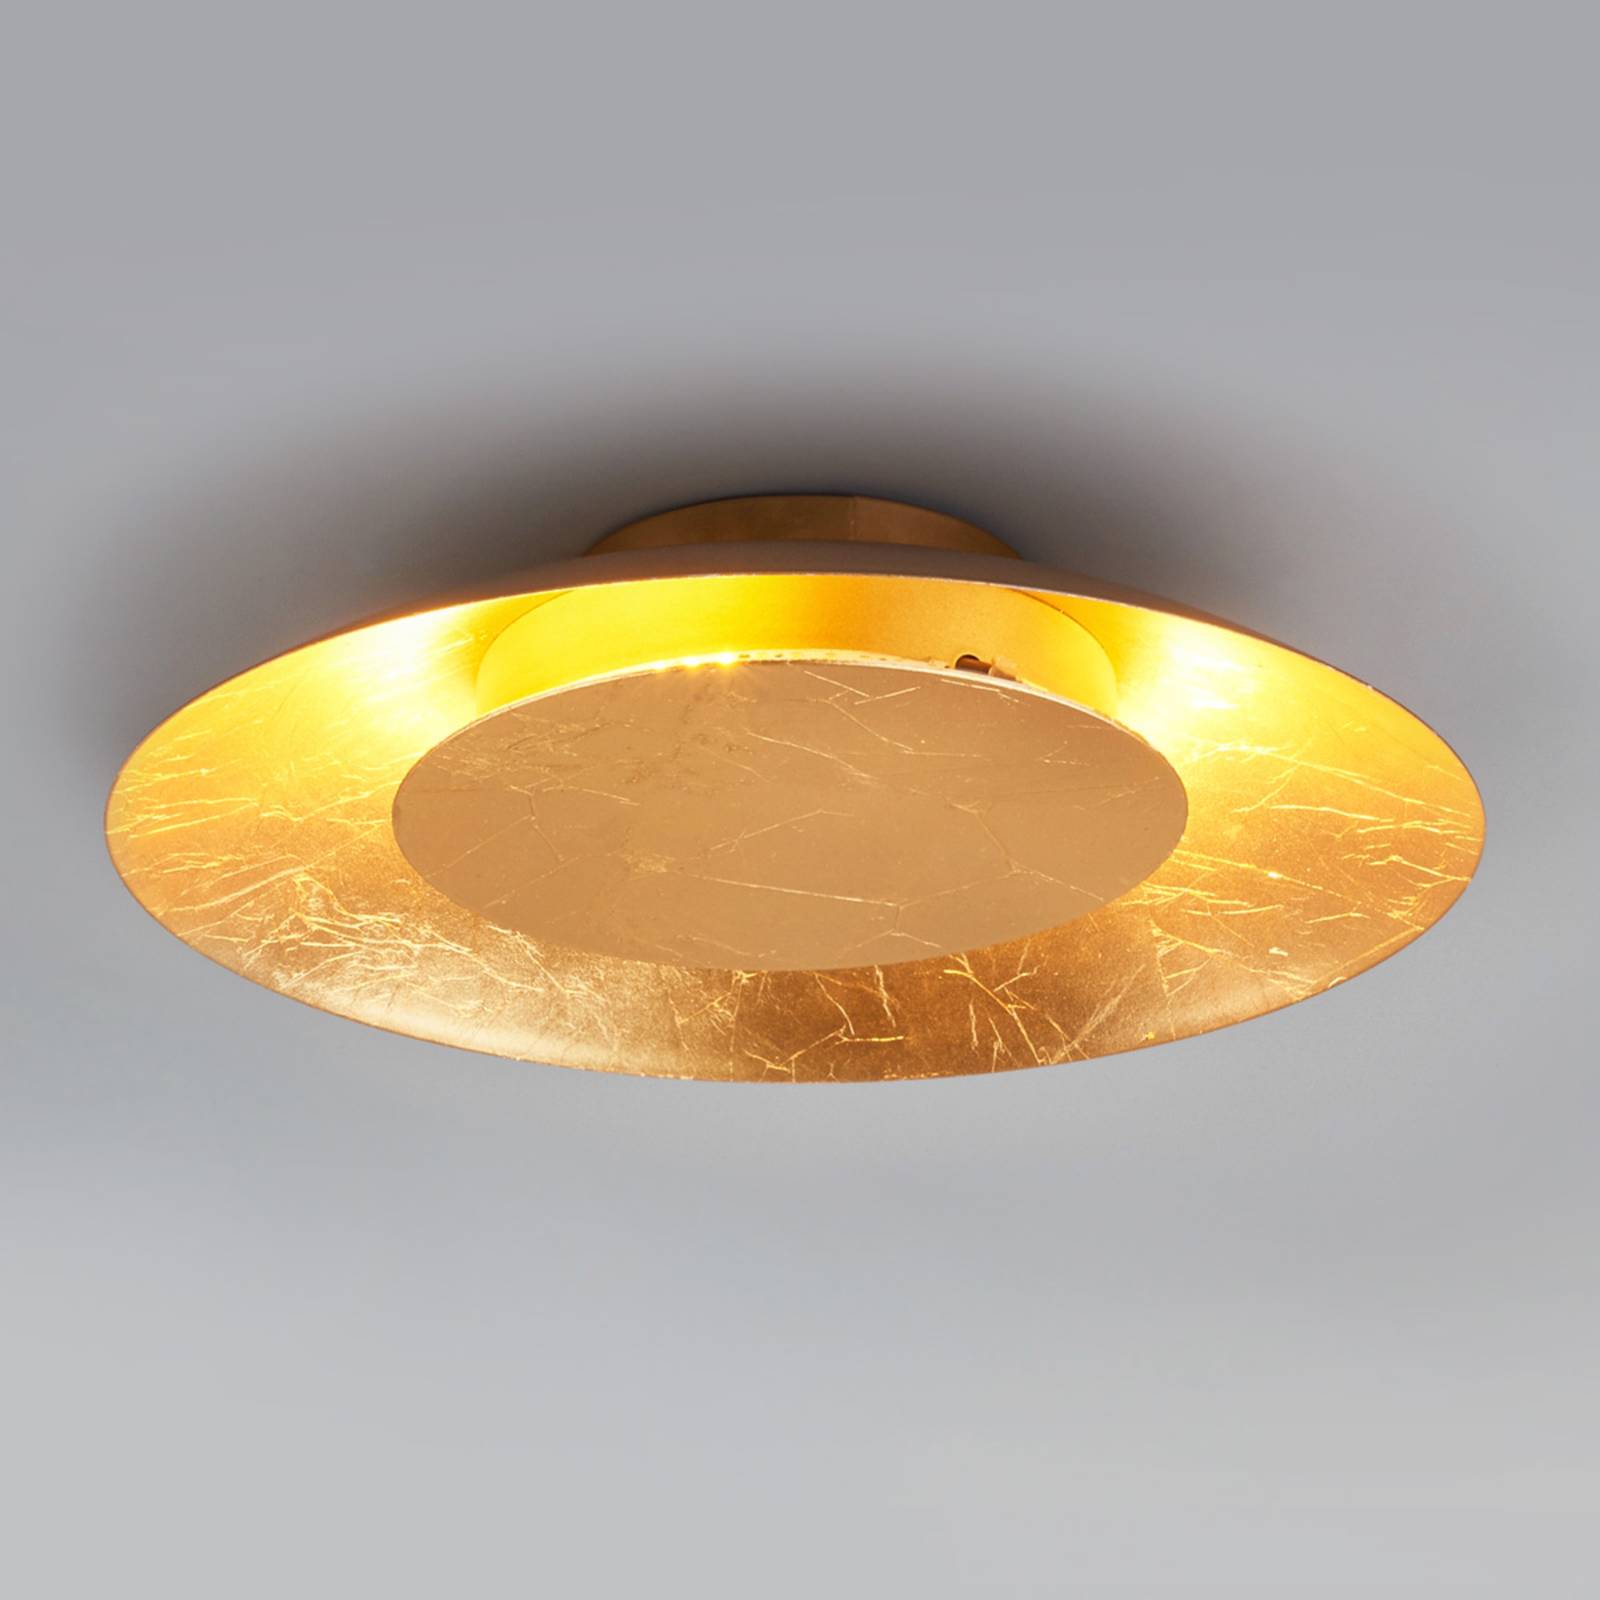 LED plafondlamp Keti in goudlook, Ø 34,5 cm